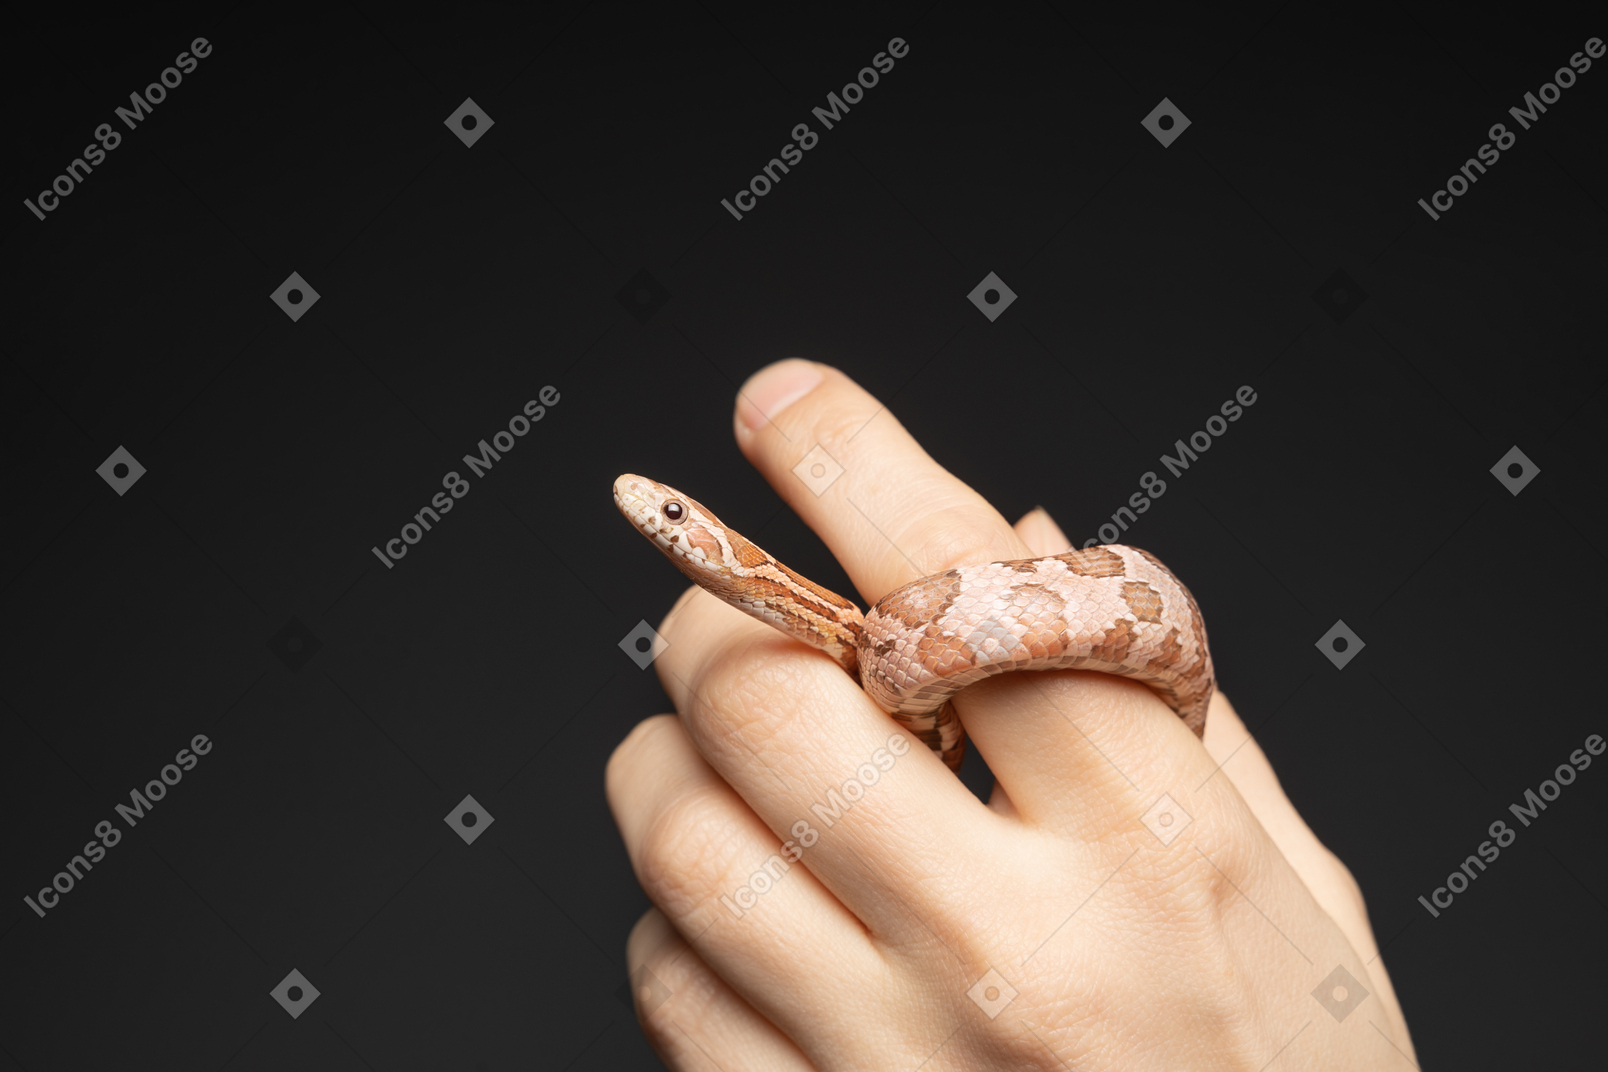 Kleine kornnatter, die sich um menschlichen finger krümmt